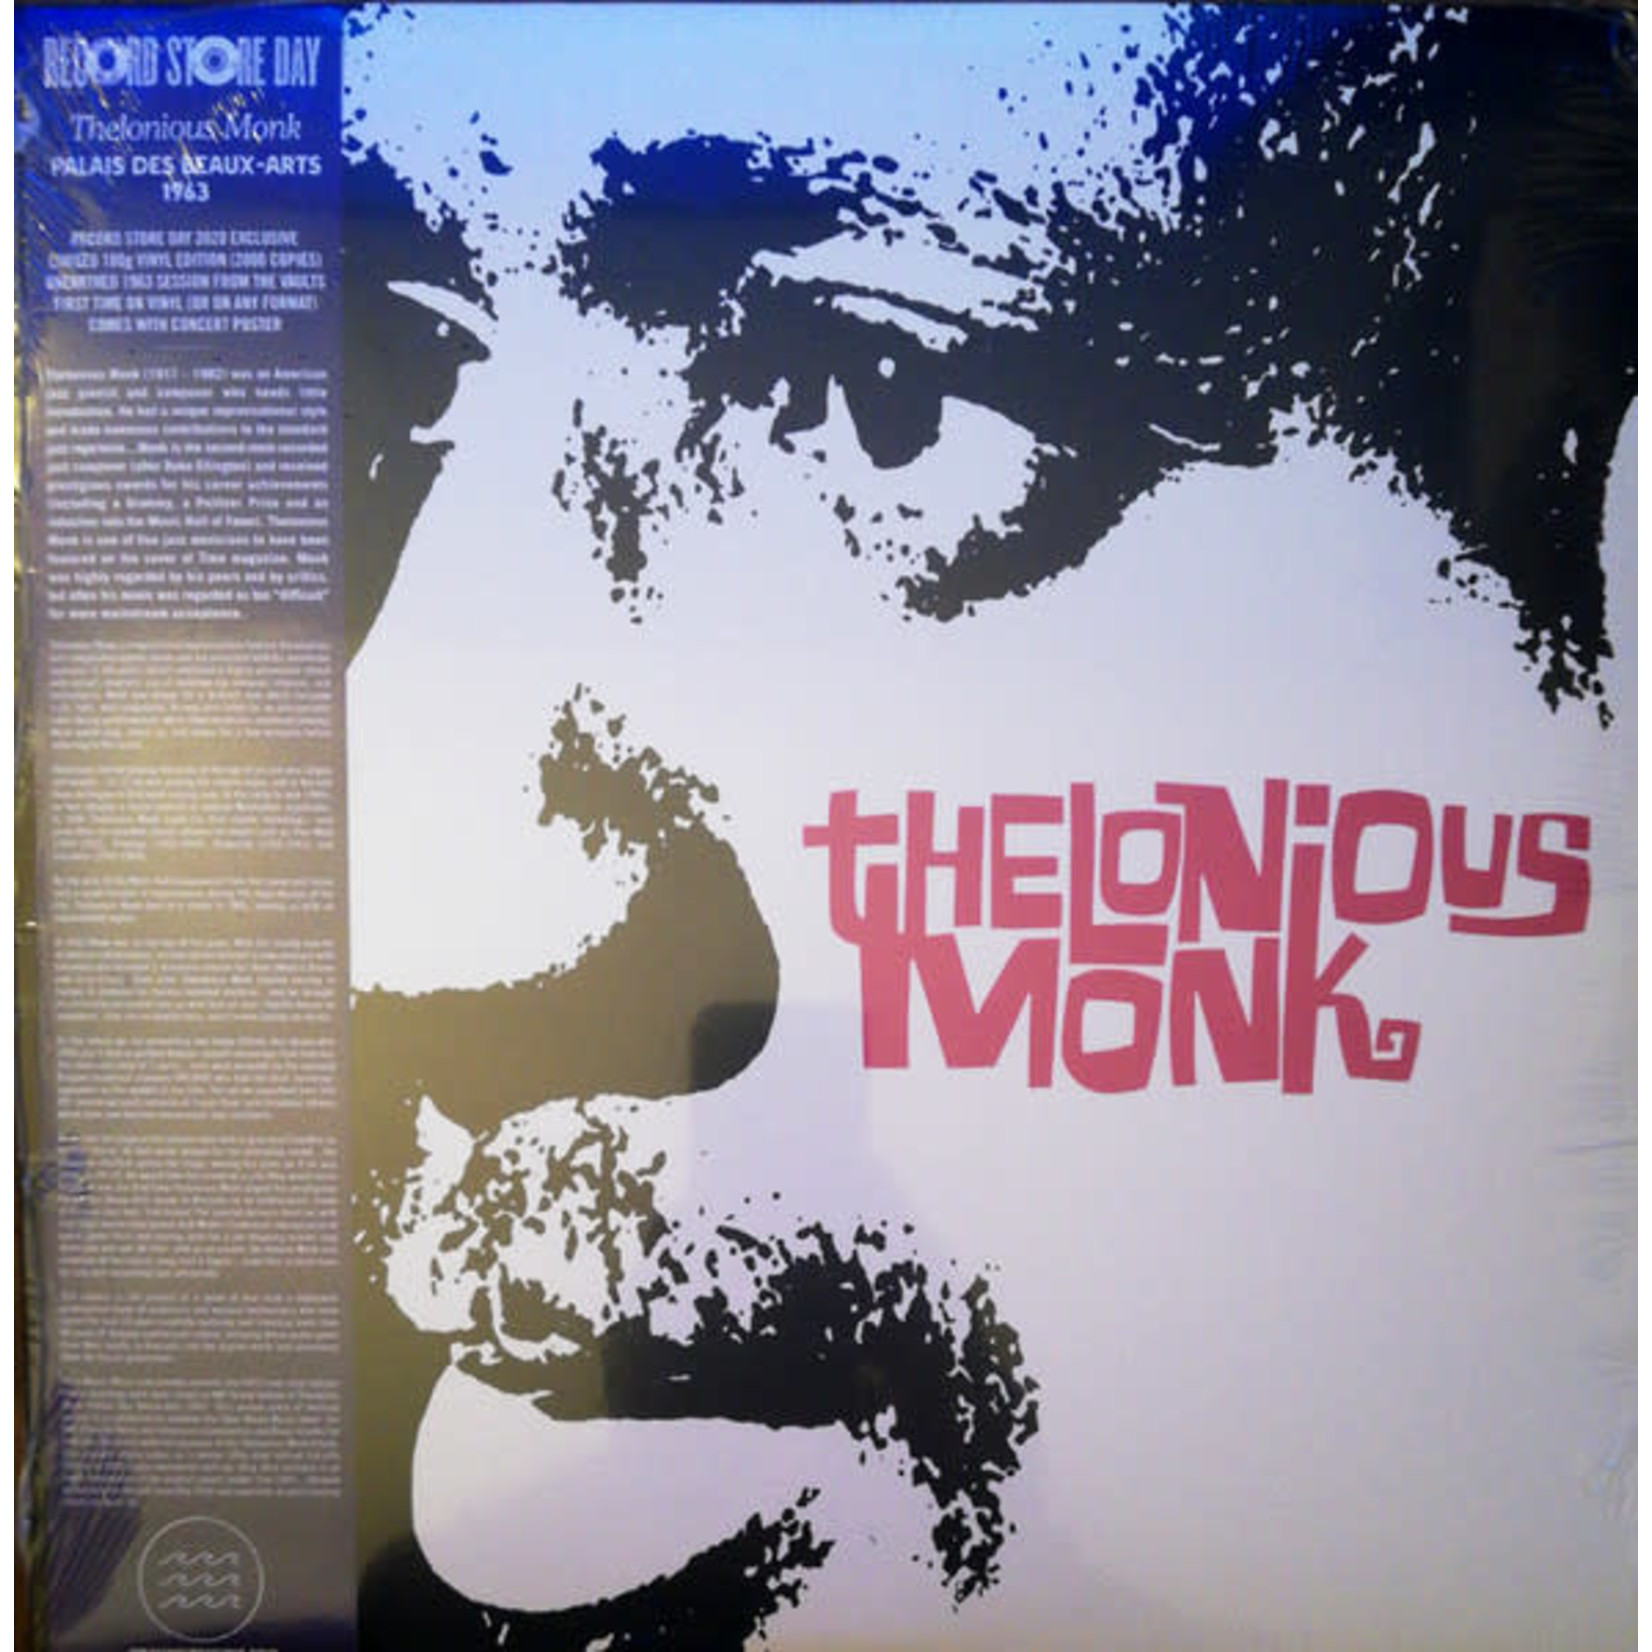 Tidal Waves Thelonious Monk - Palais des Beaux-Arts 1963 (LP)